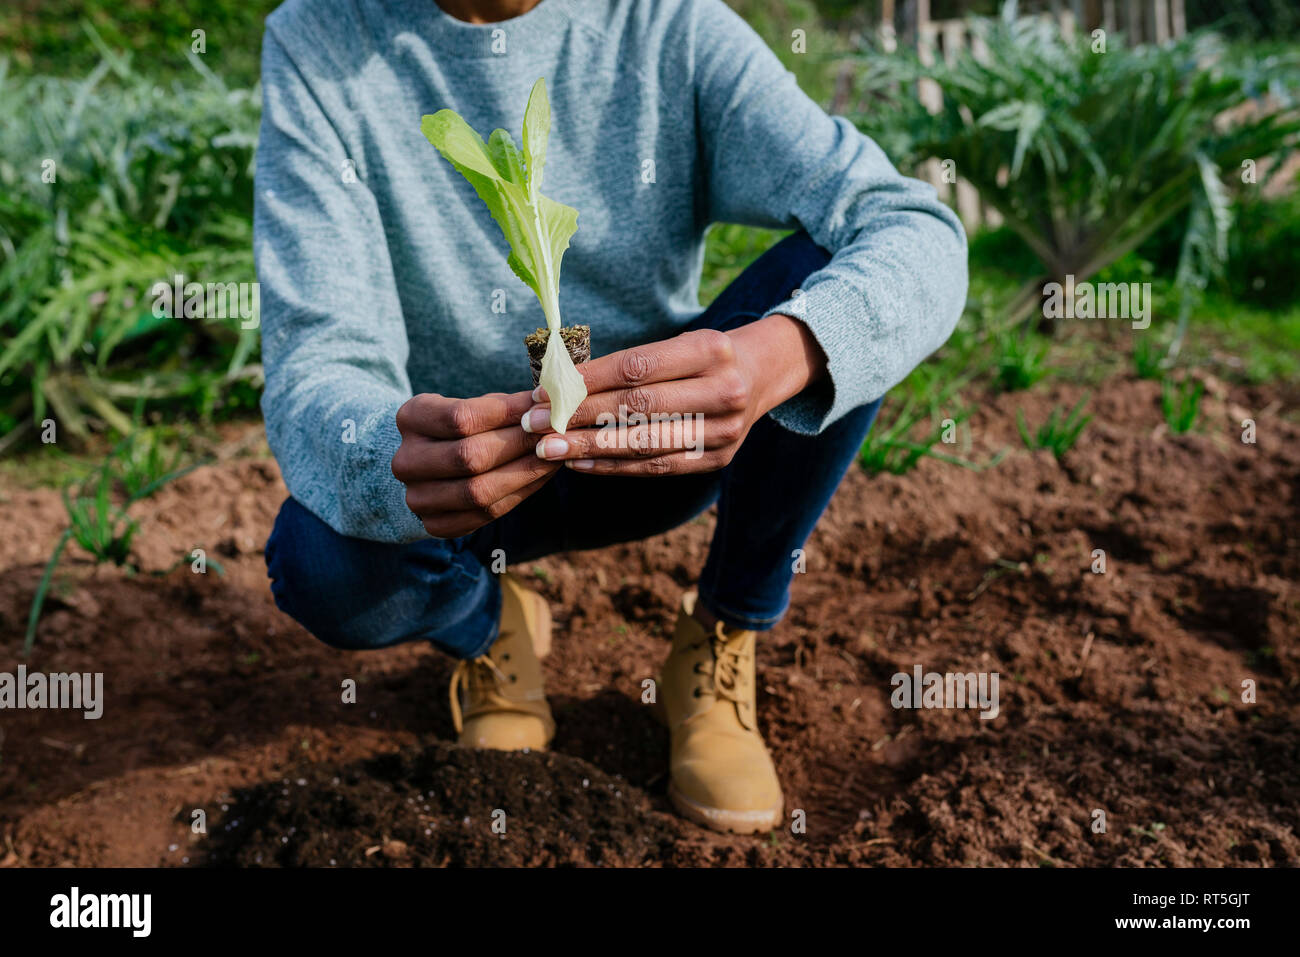 Woman planting lettuce seedlings in vegetable garden Stock Photo